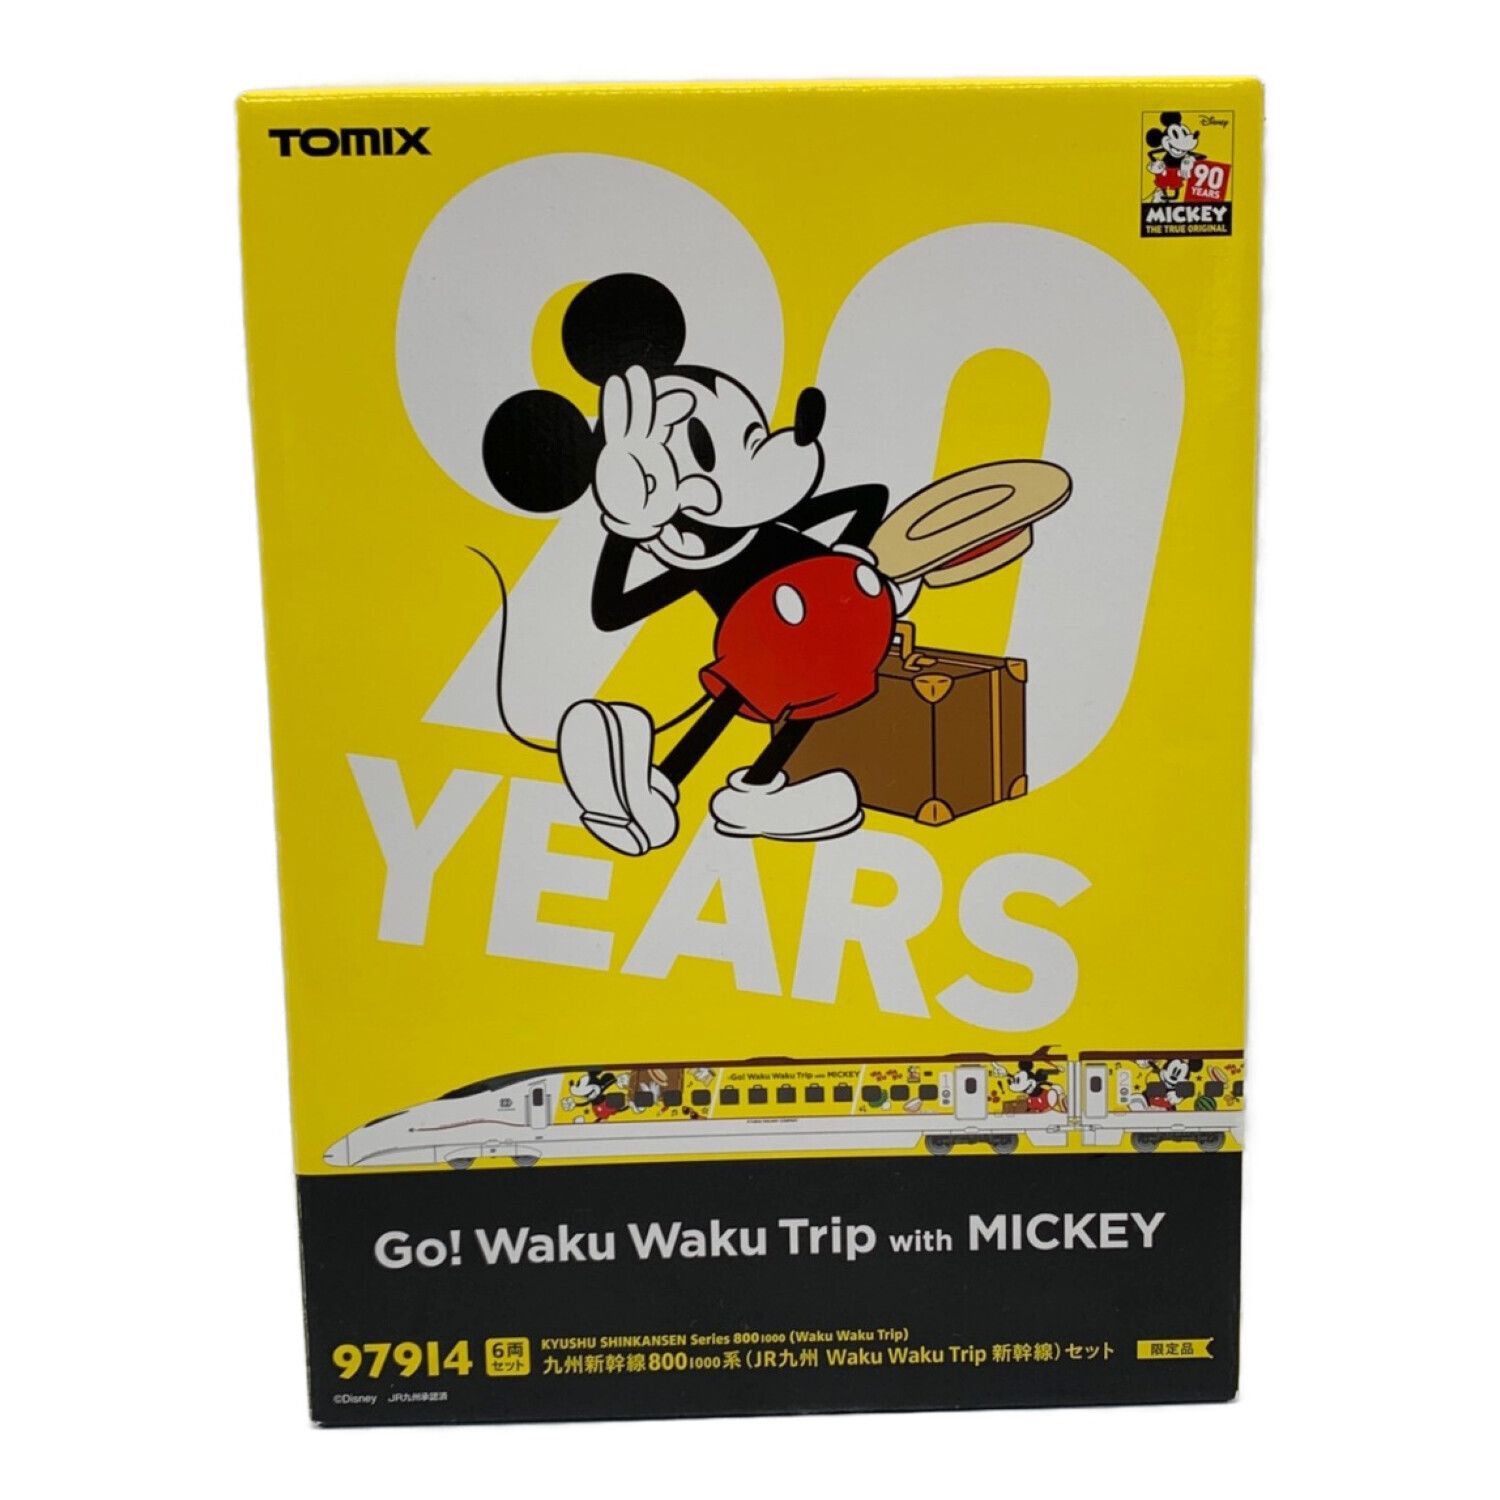 tomix 97915 Go! Waku Waku Trip with MICKEY - 鉄道模型